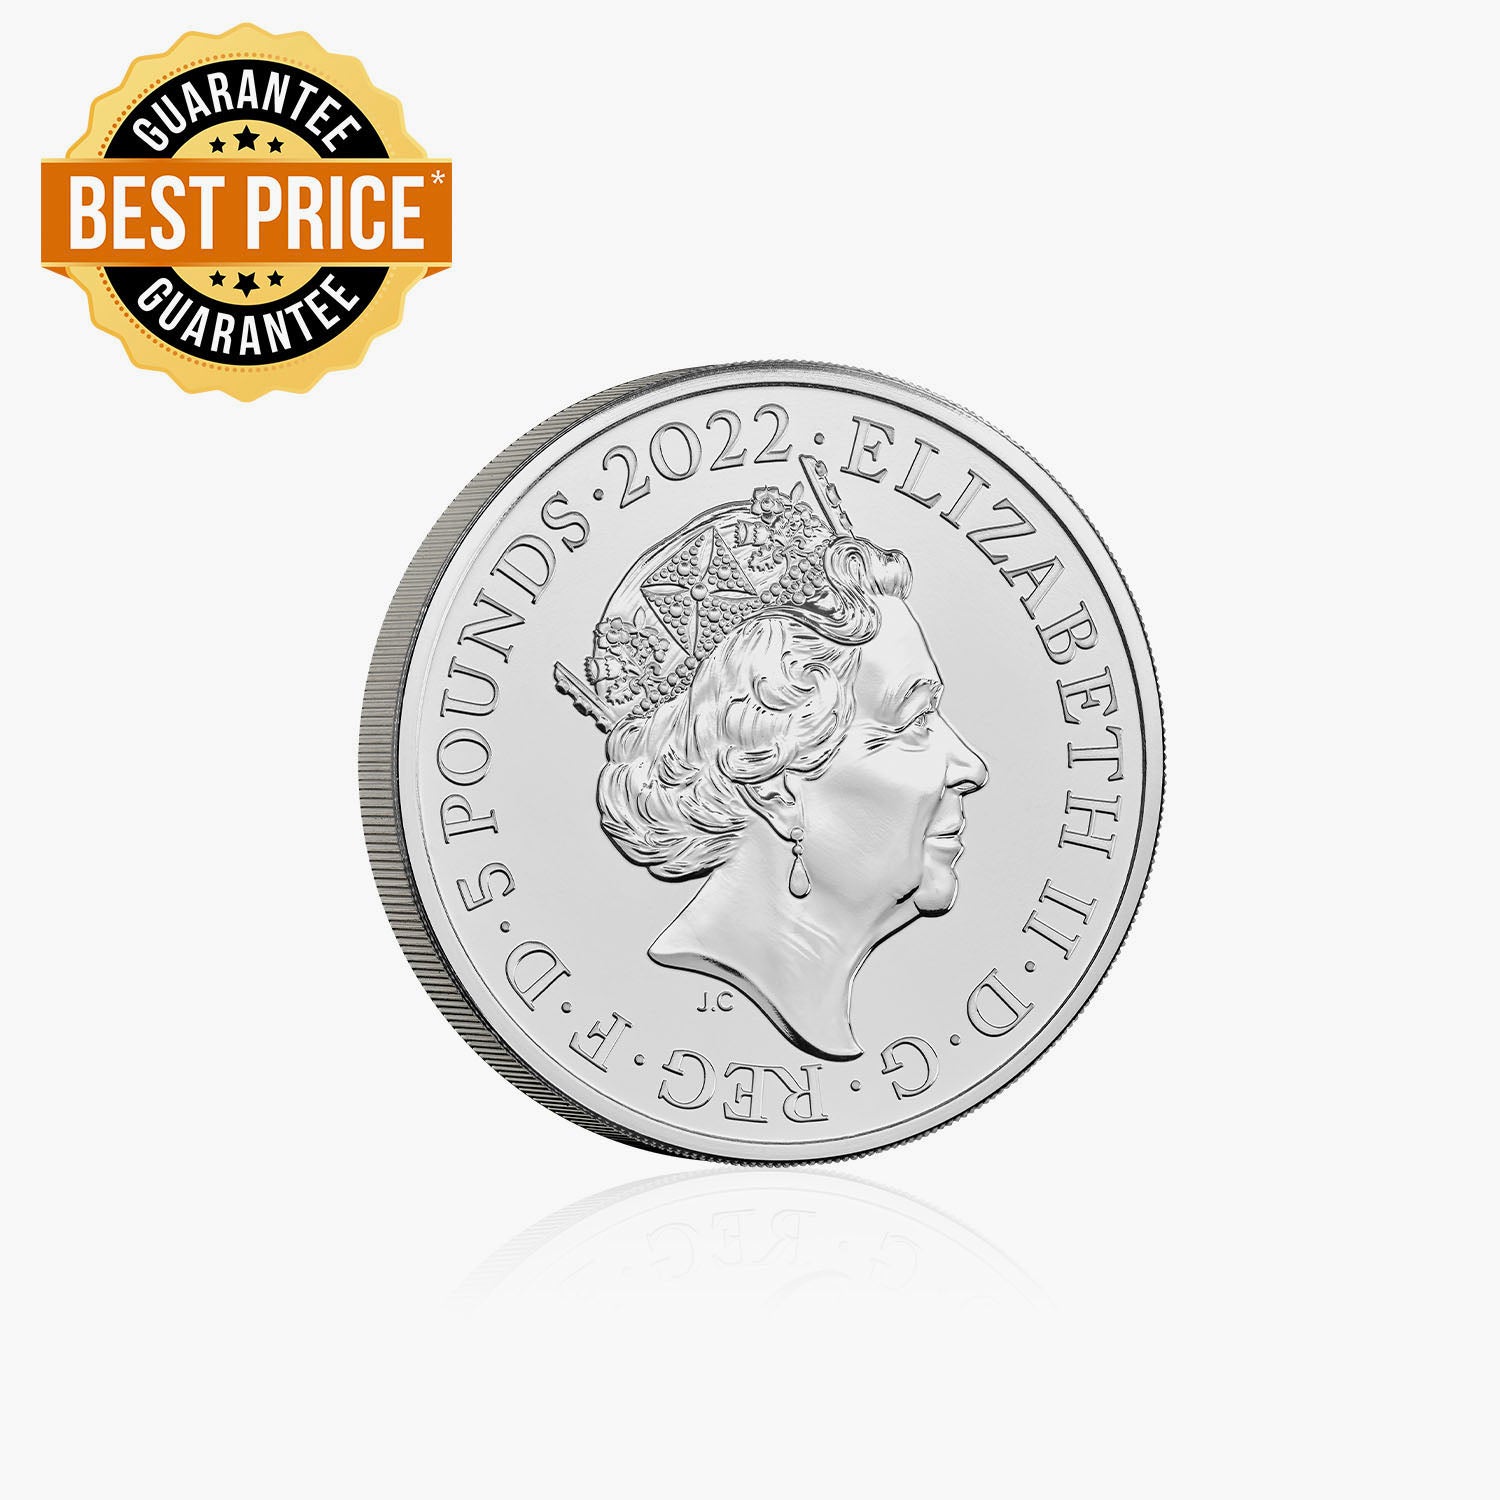 ピーターラビット生誕120周年記念 £5 2022 BUコイン